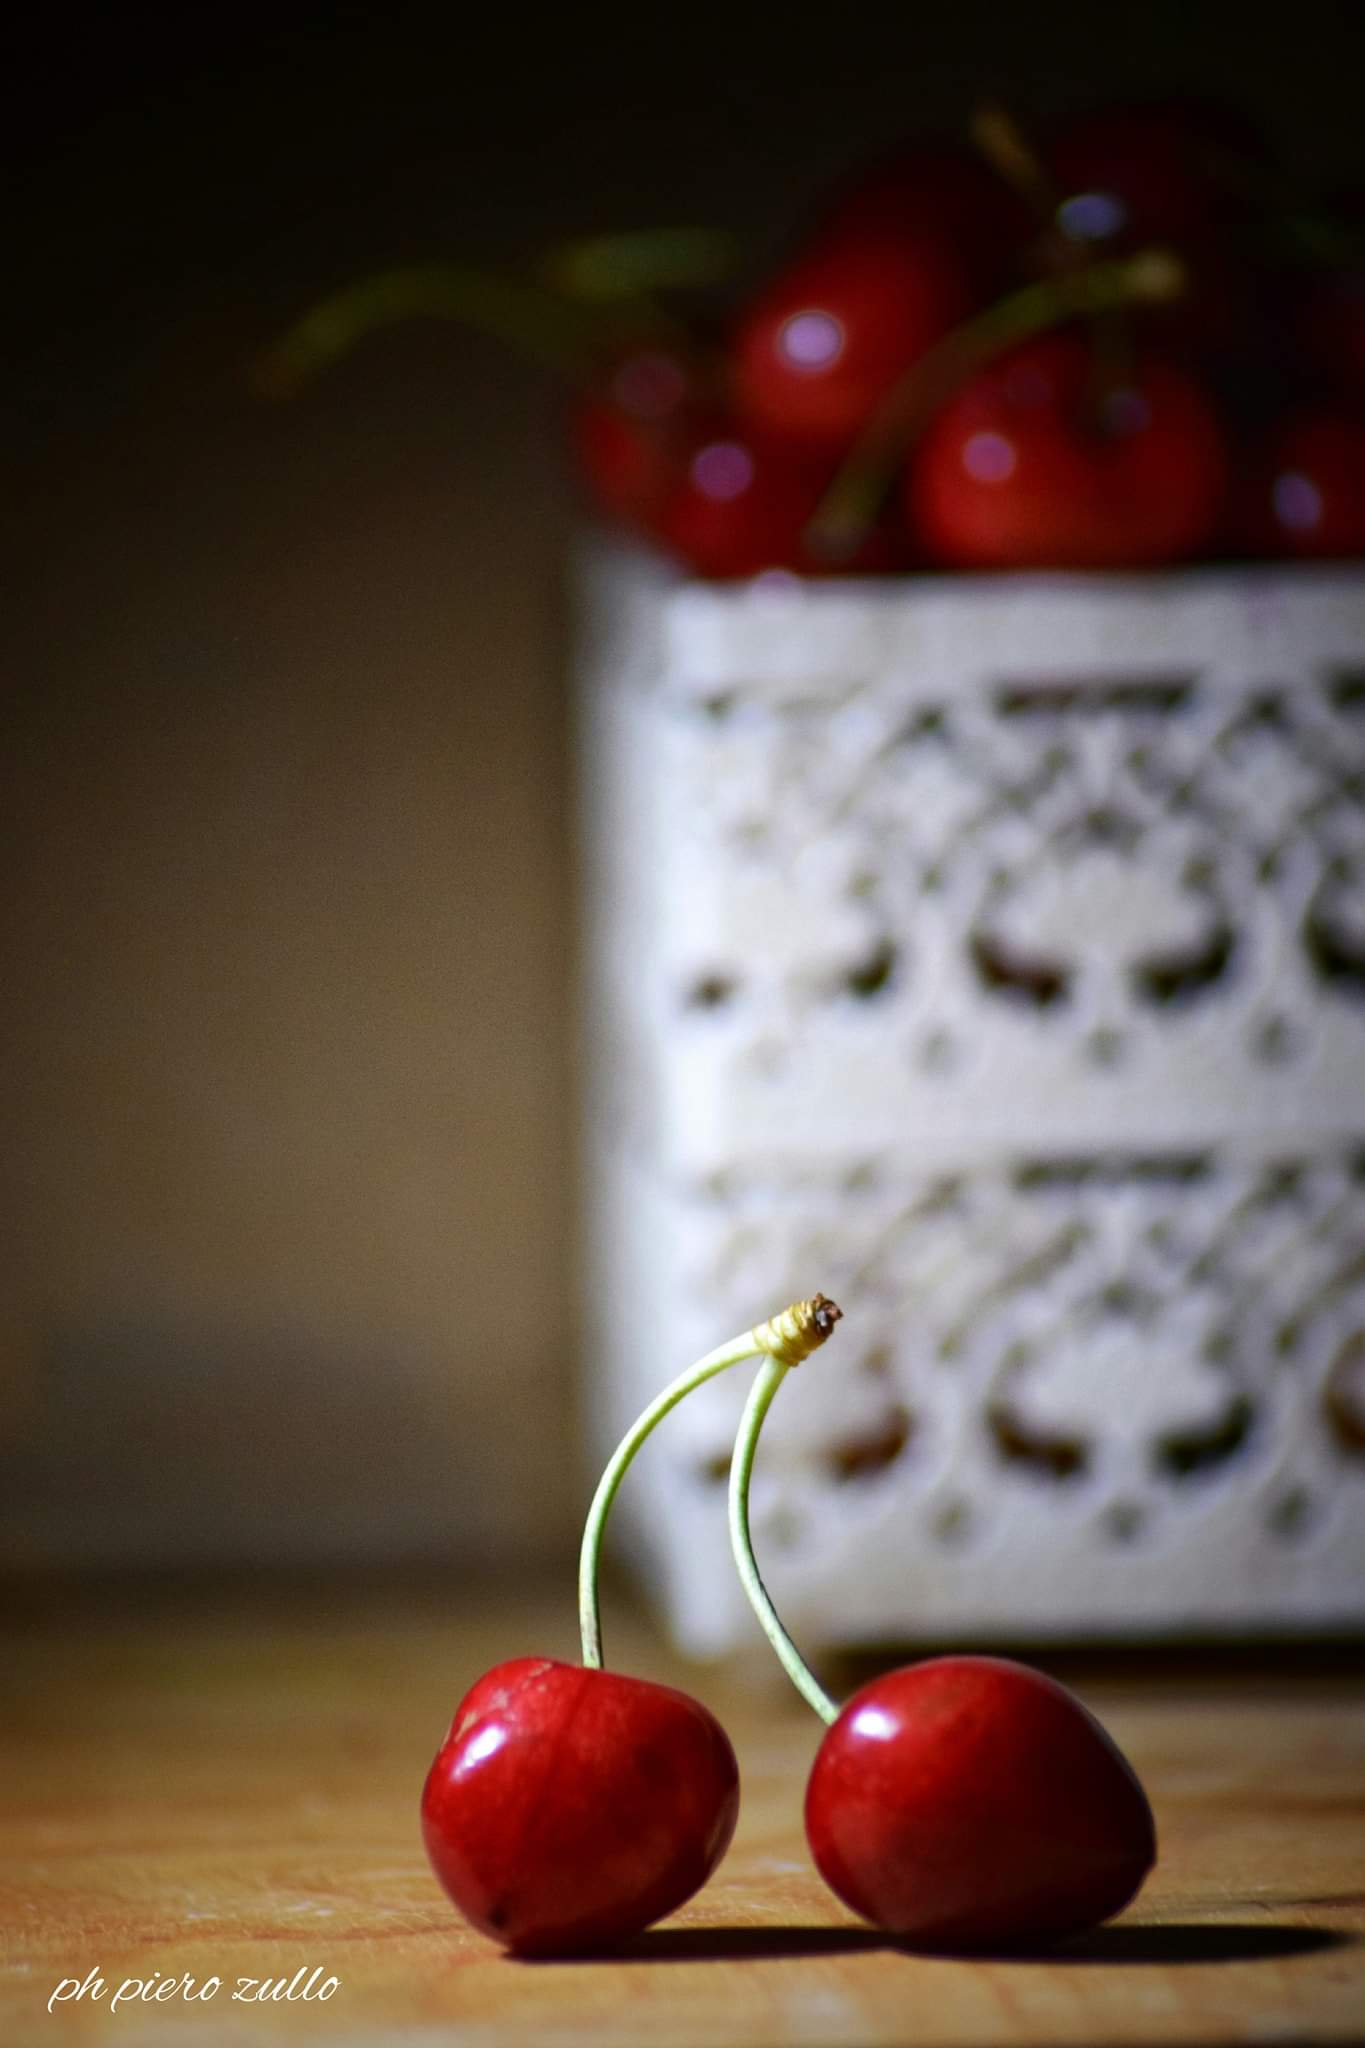 Cherries...